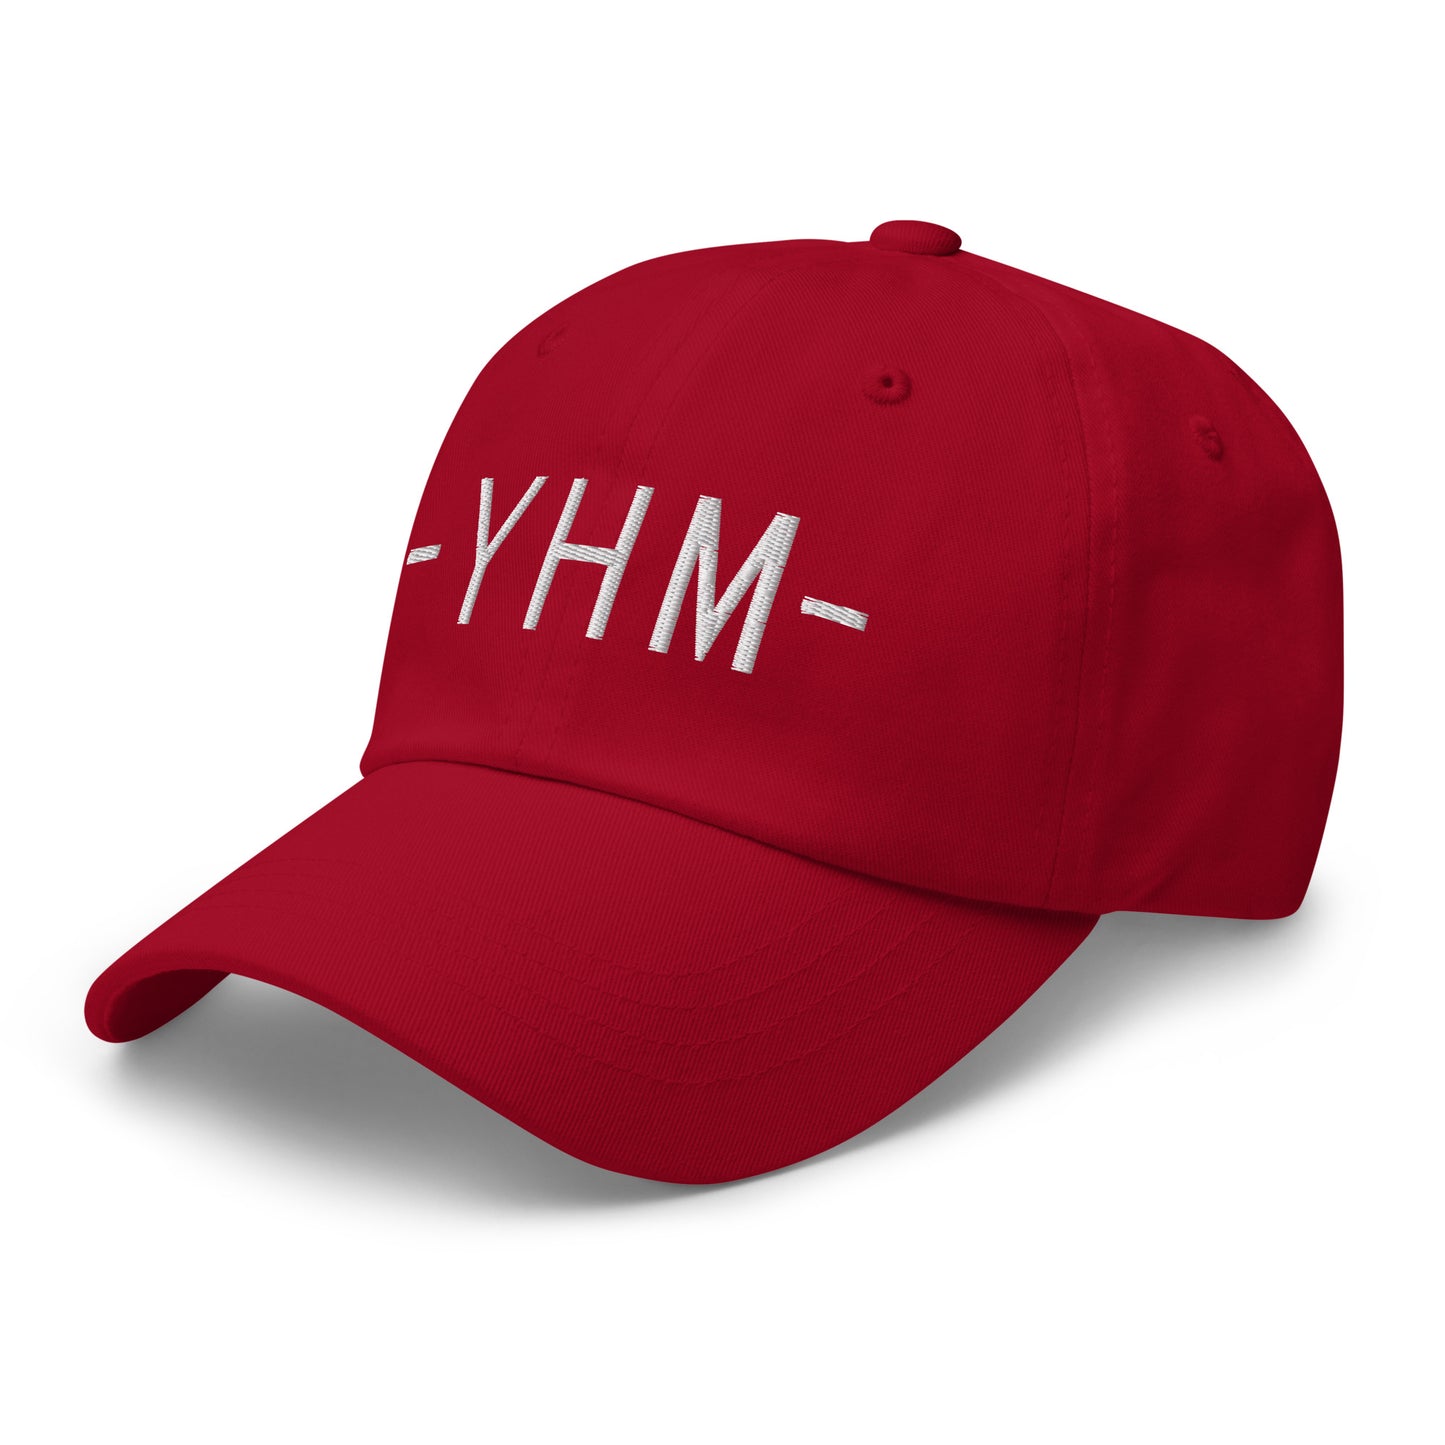 Souvenir Baseball Cap - White • YHM Hamilton • YHM Designs - Image 01